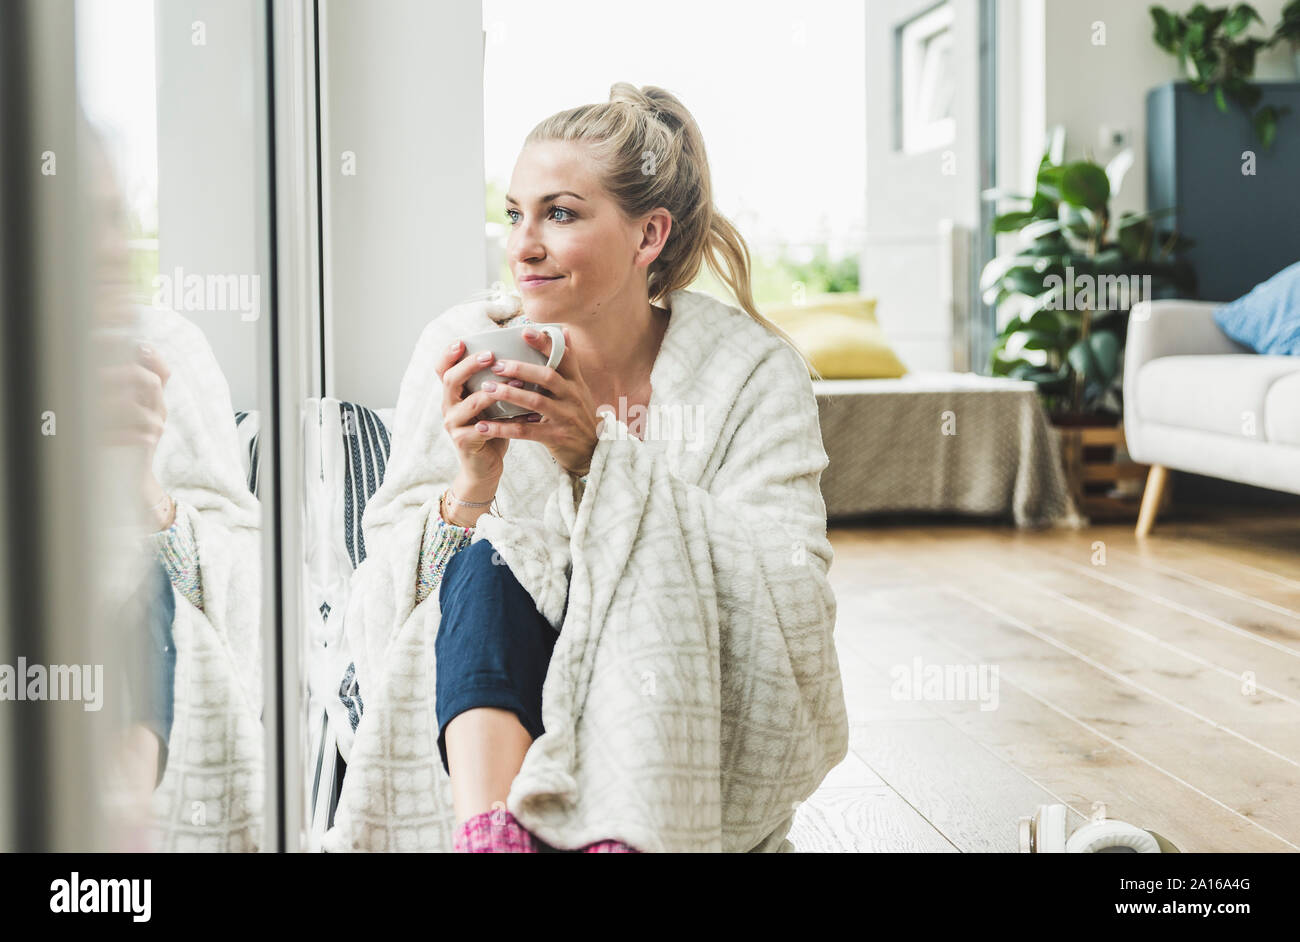 Frau eingehüllt in eine Decke am Fenster sitzen zu Hause Kaffee trinken Stockfoto